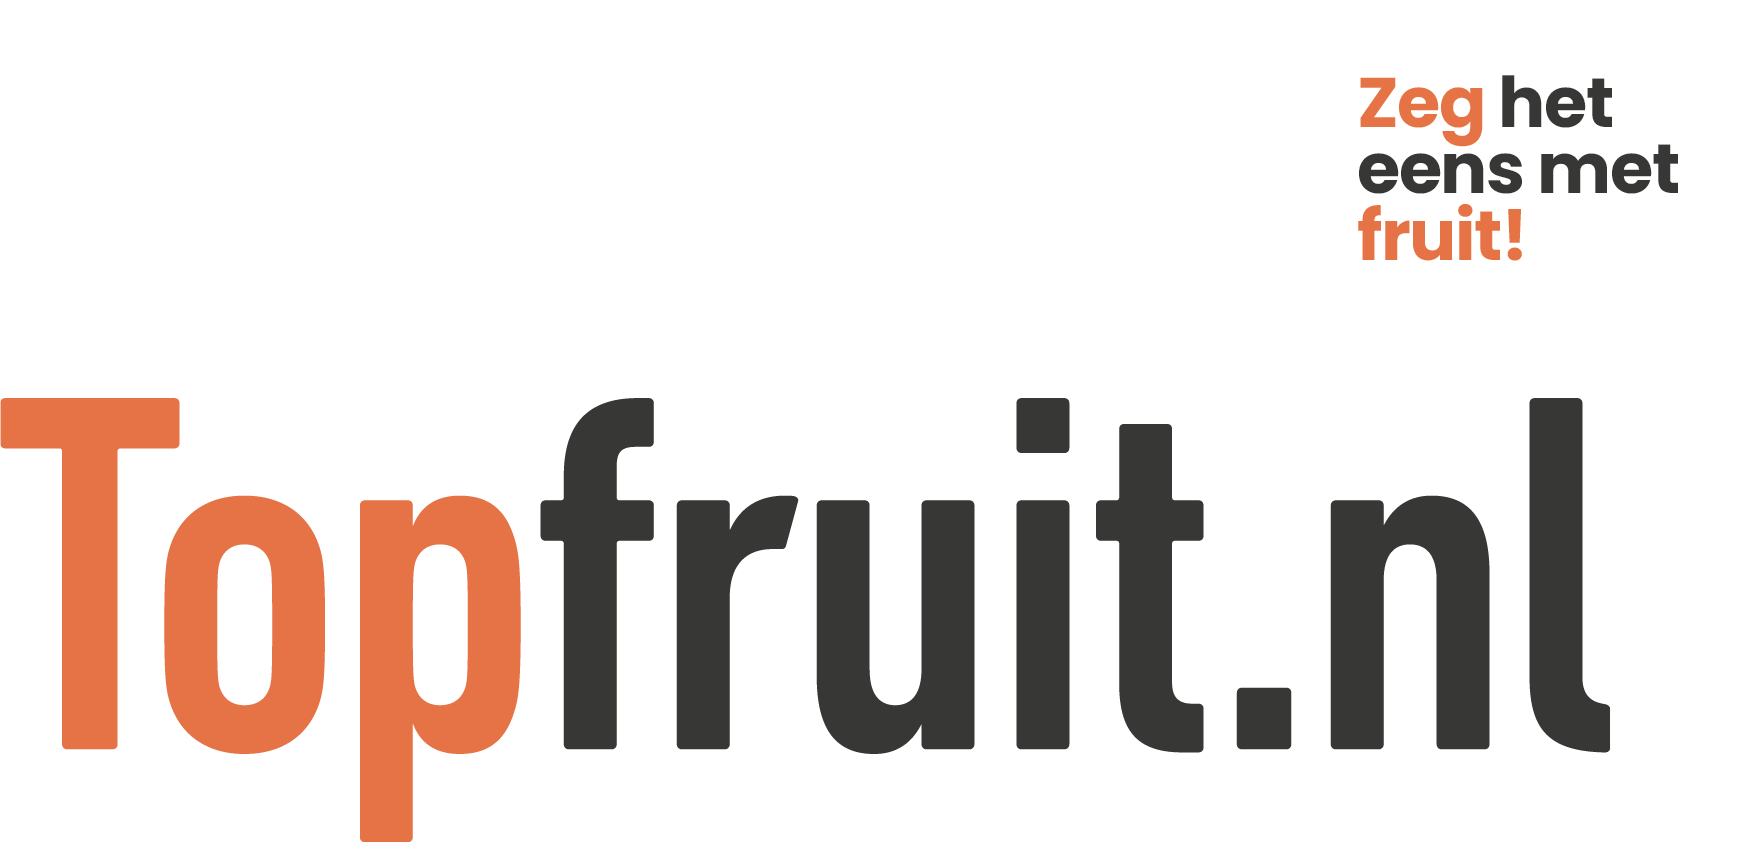 Topfruit.nl